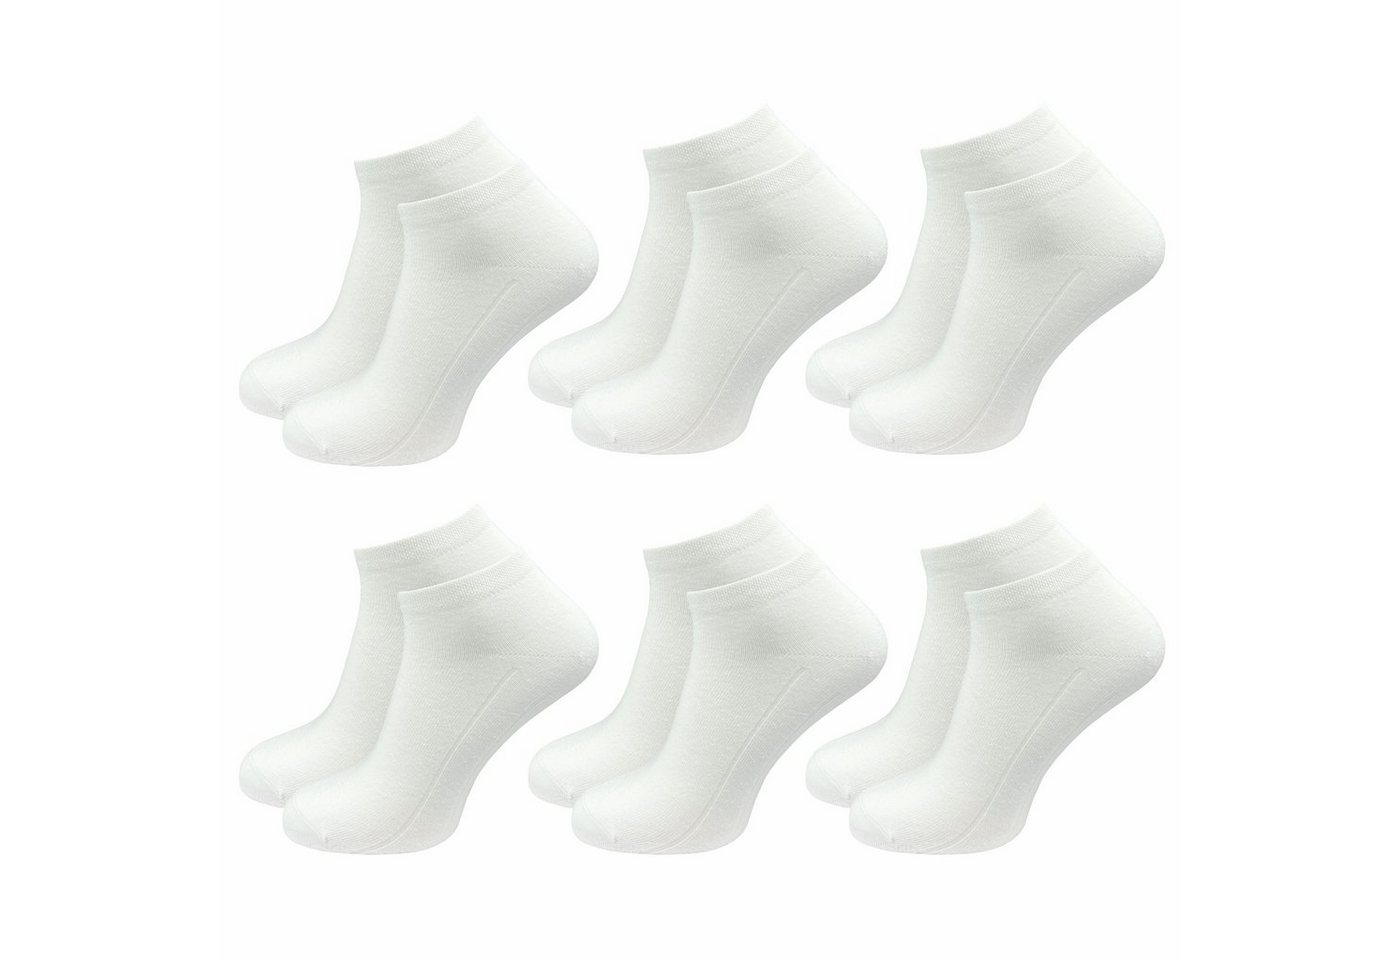 GAWILO Sneakersocken für Damen in weiß und schwarz, Ohne drückende Zehennaht, Extra Weich (6 Paar) Kurze Socken ideal zur Kombination mit Turnschuhen und Sneakern von GAWILO